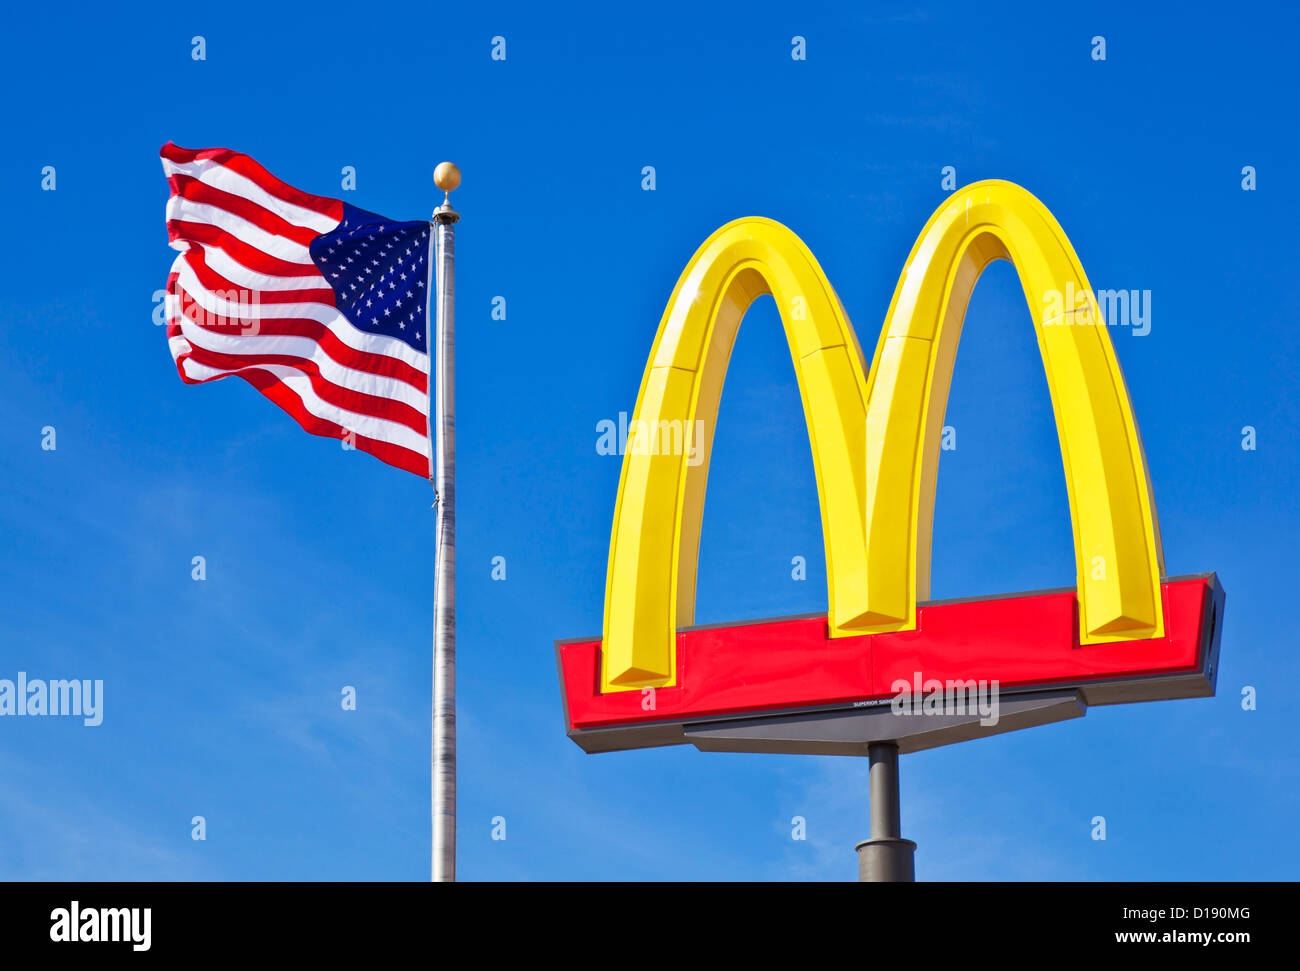 Logo Mcdonald's signe arches contre un ciel bleu avec un drapeau américain stars and stripes USA États-Unis d'Amérique Banque D'Images